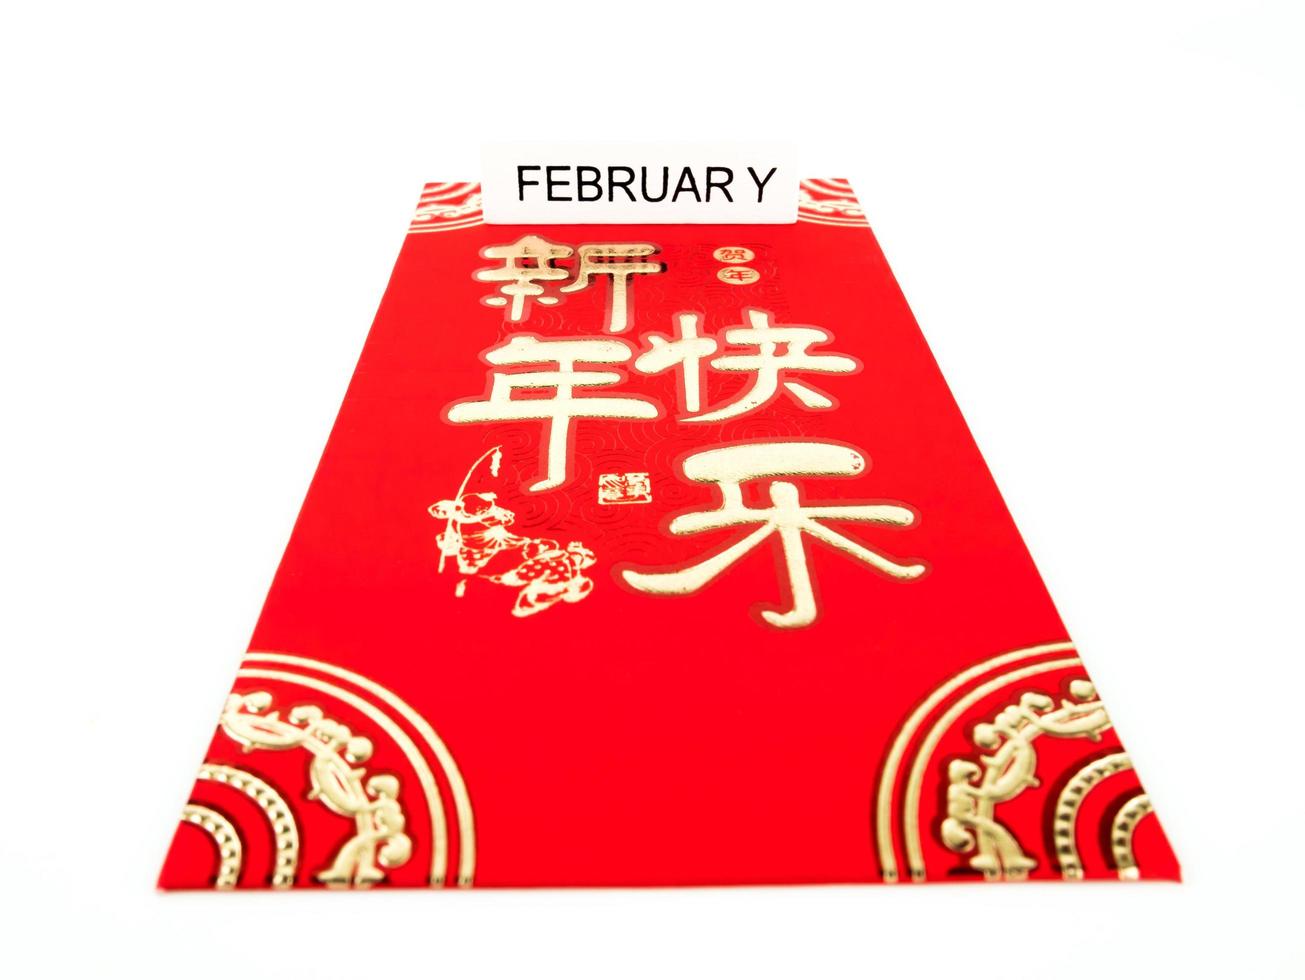 envelope vermelho isolado no fundo branco com fevereiro para presente ano novo chinês. texto chinês no envelope significa feliz ano novo chinês foto